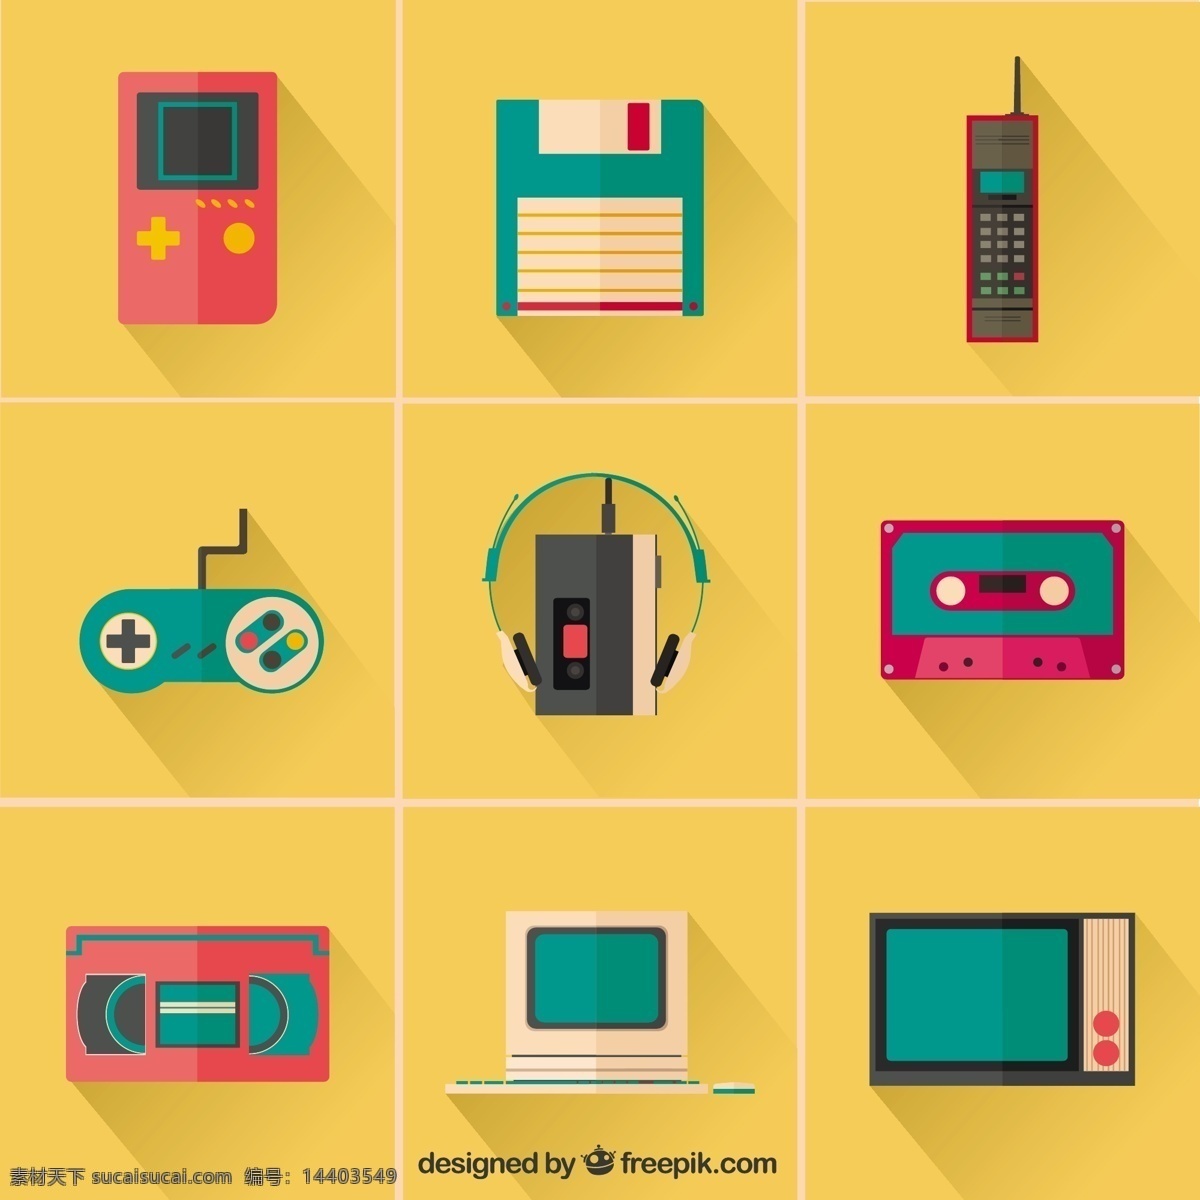 彩色 复古 设备 图标 音乐 电话 电视 收音机 胶带 电话图标 装置 音乐图标 复古怀旧 工具 电视图标 小工具 游戏 音乐磁带 黄色